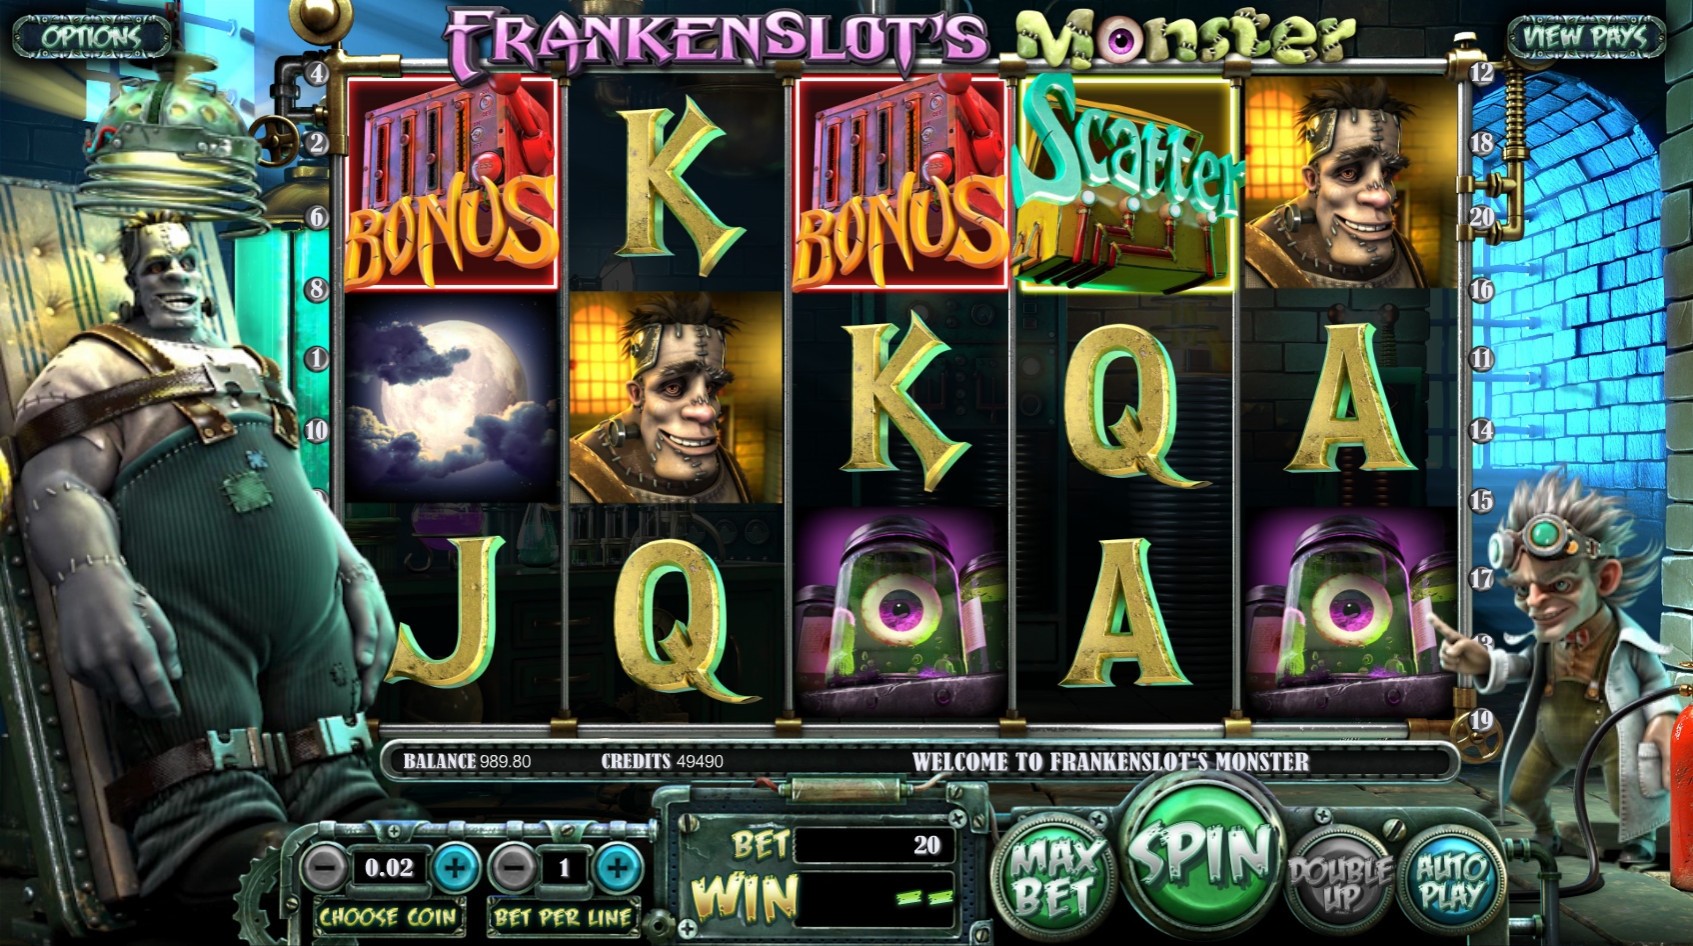 Frankenslot’s Monster (Frankenslot's Monster) from category Slots